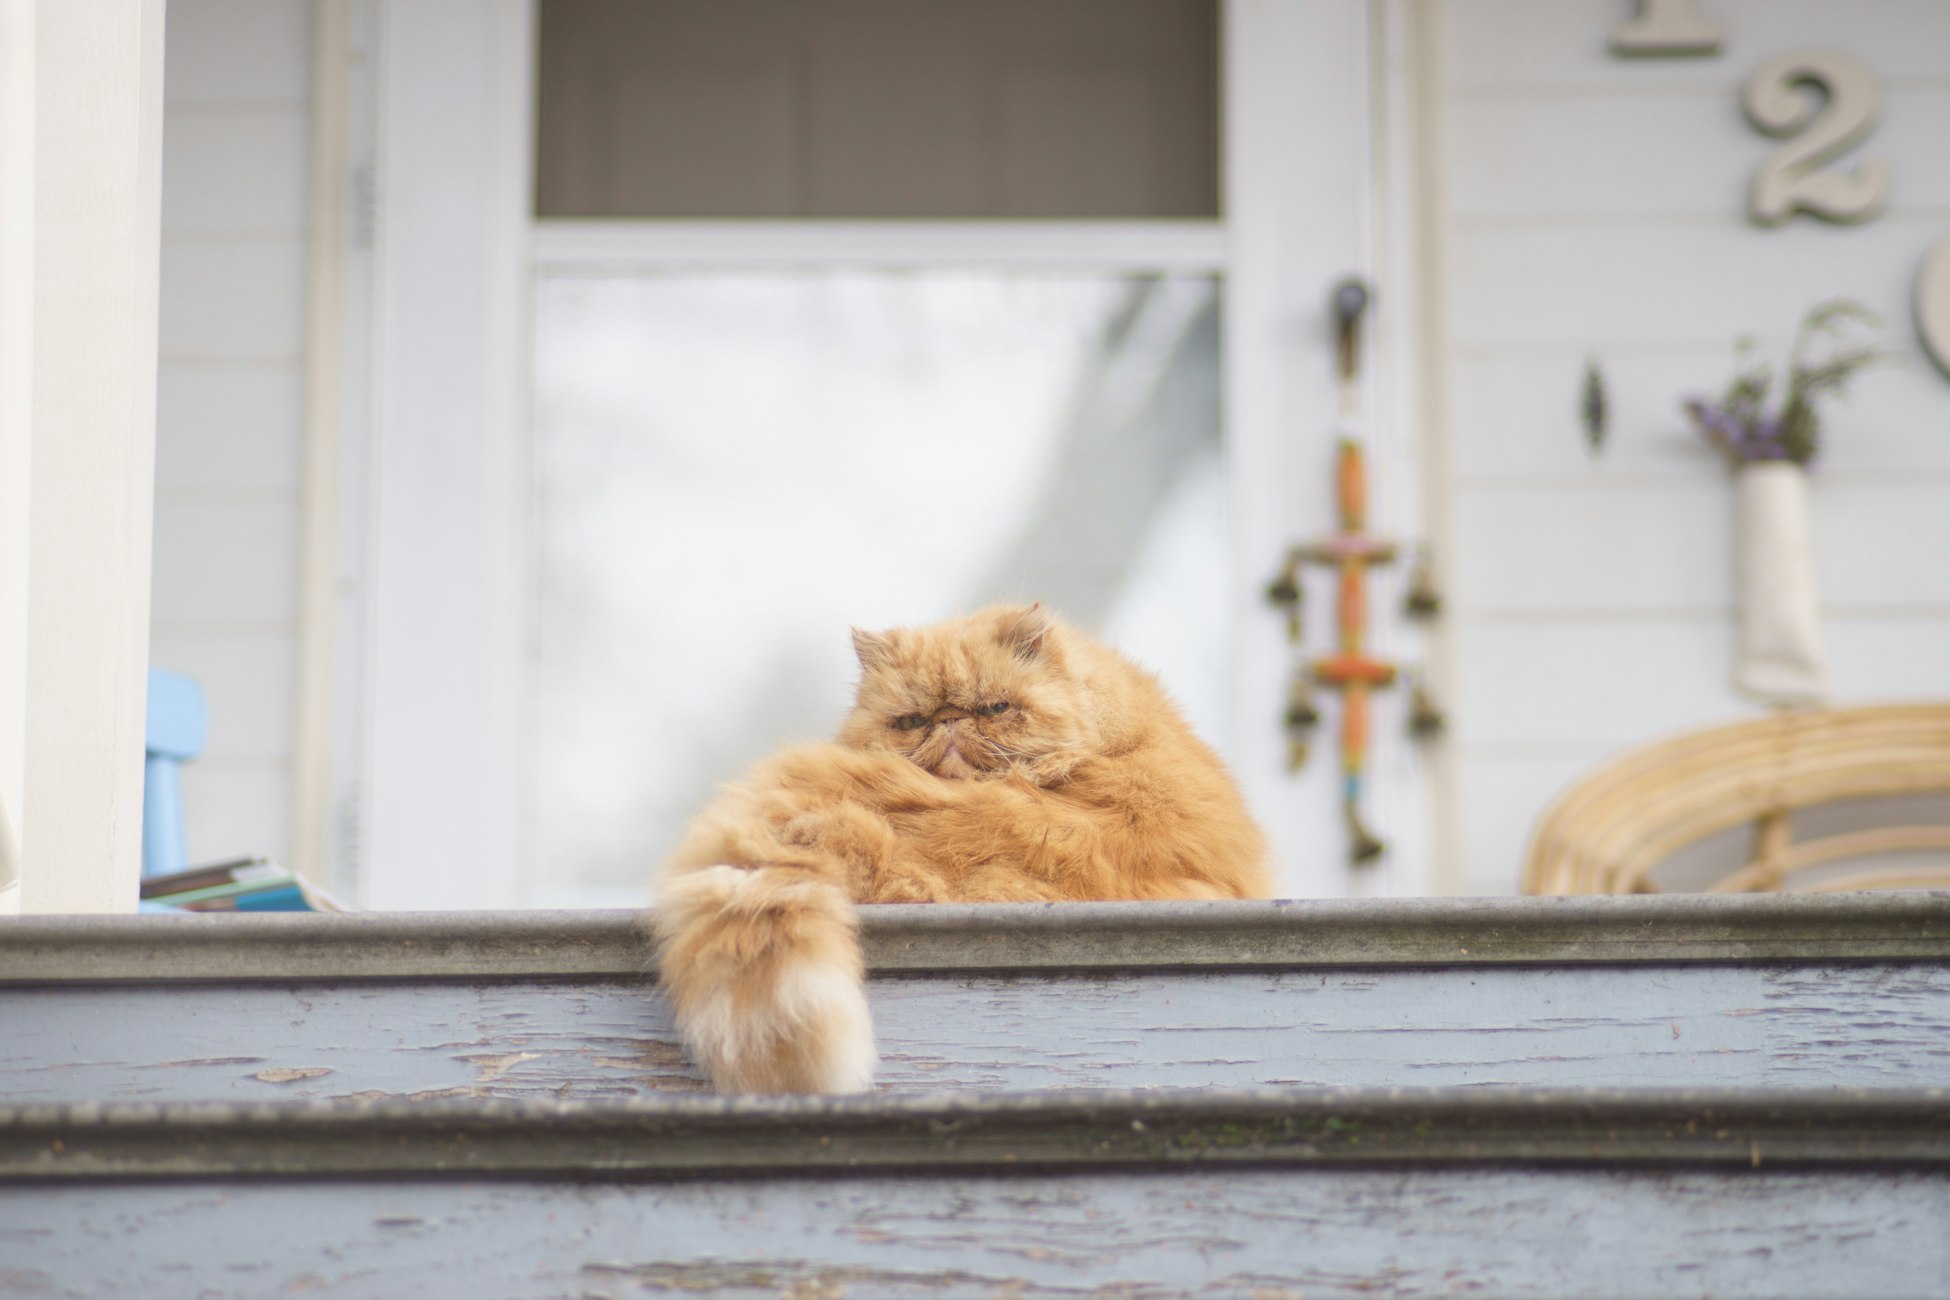 대문 앞에 앉아 있는 털이 풍성한 주황색 고양이